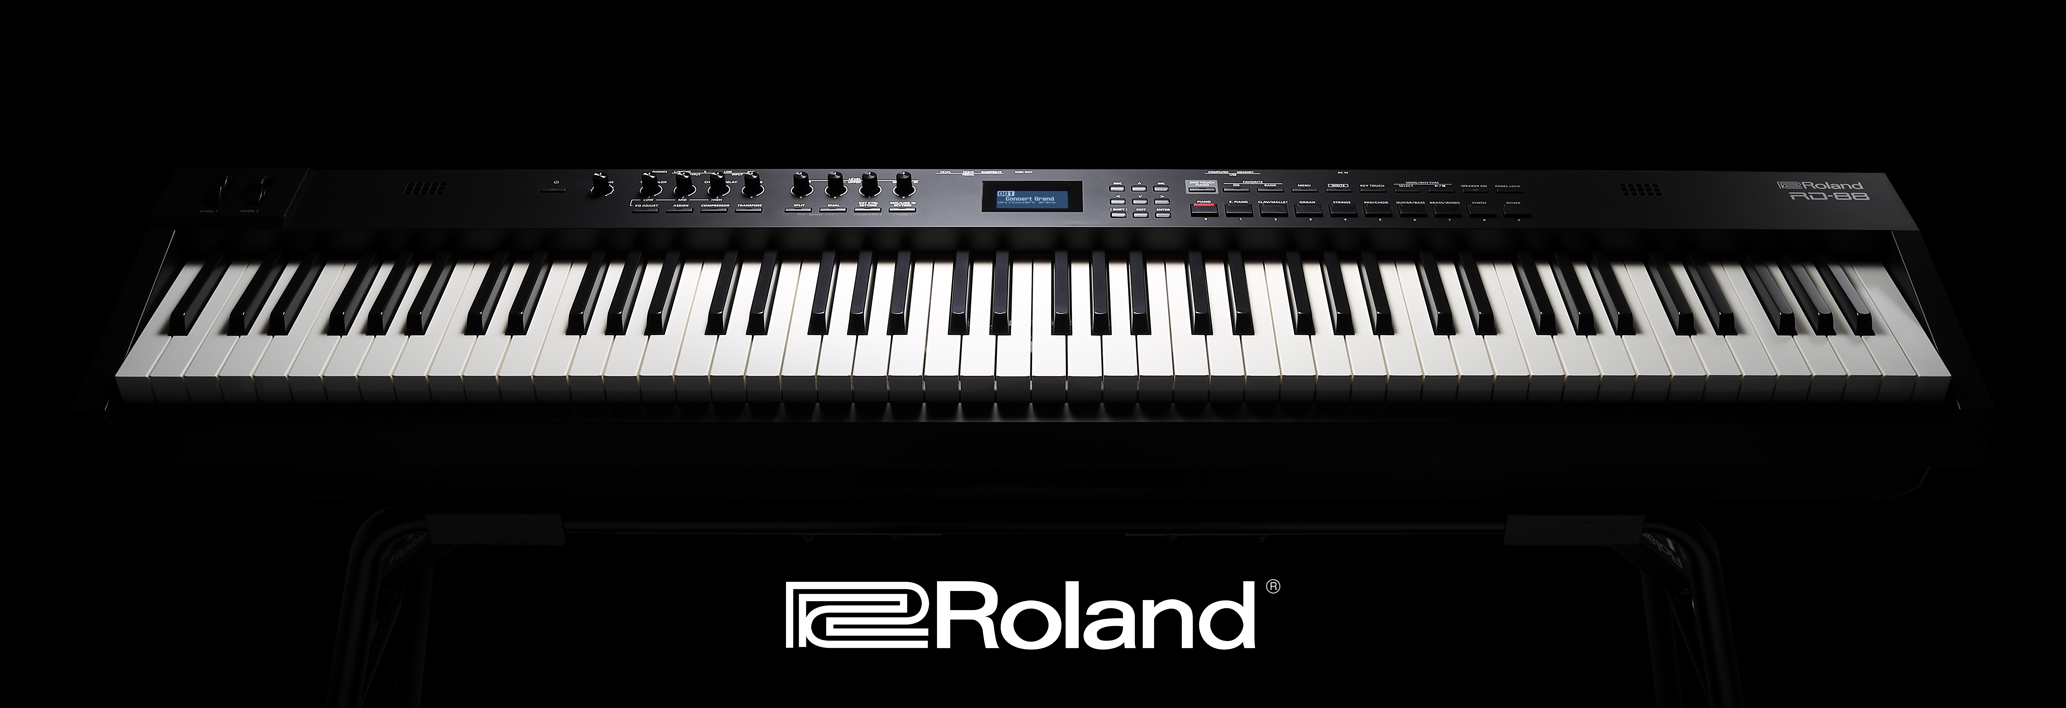 Montez sur scène avec le piano RD-88 Roland !